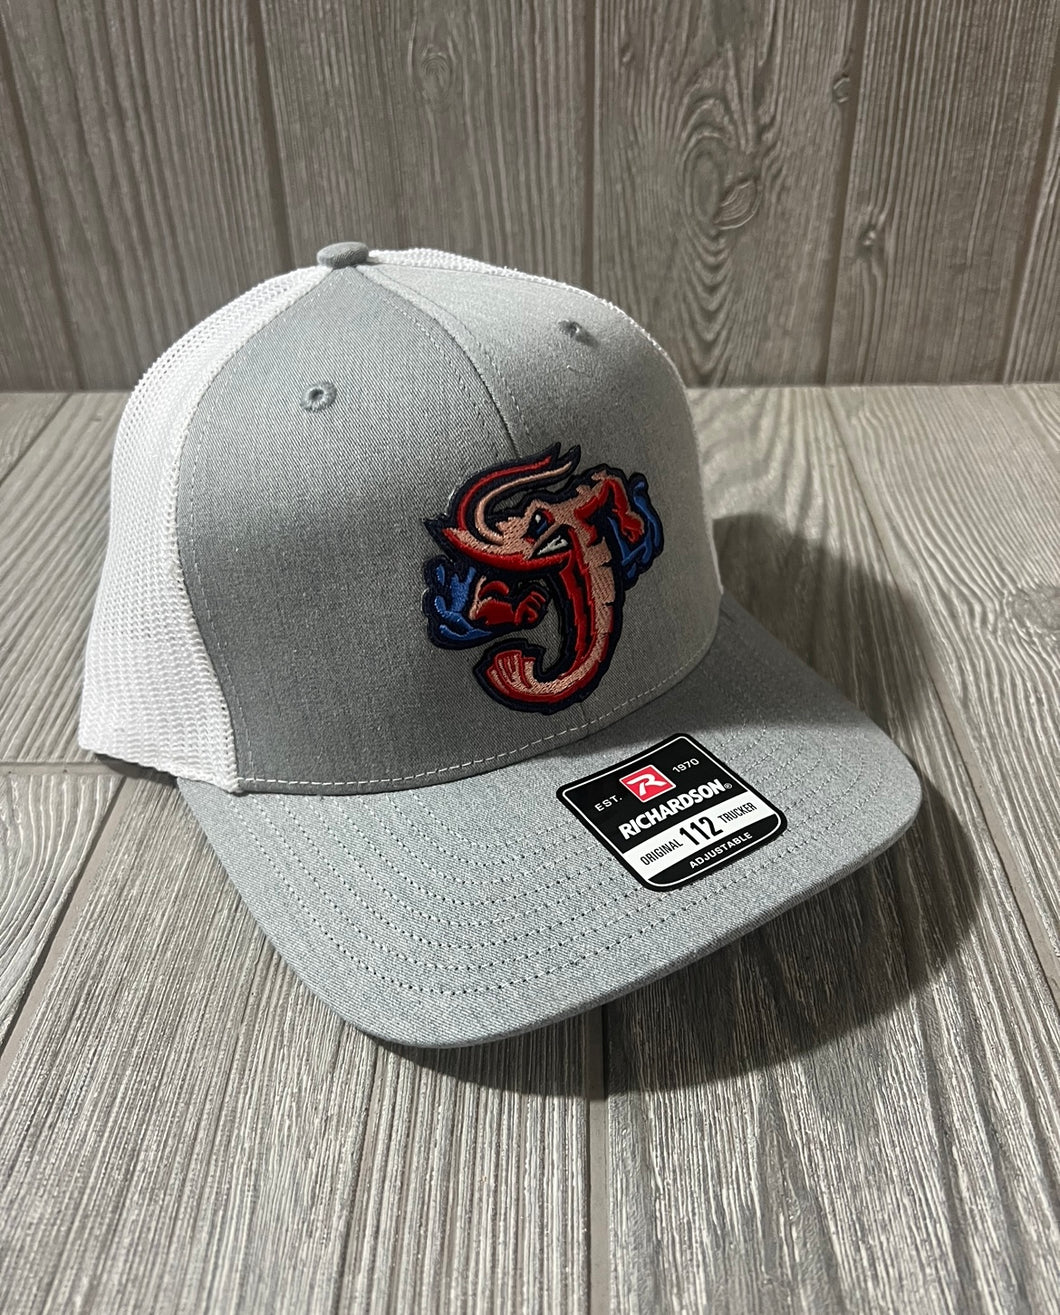 Jumbo ShrimpLittle League Baseball Hat